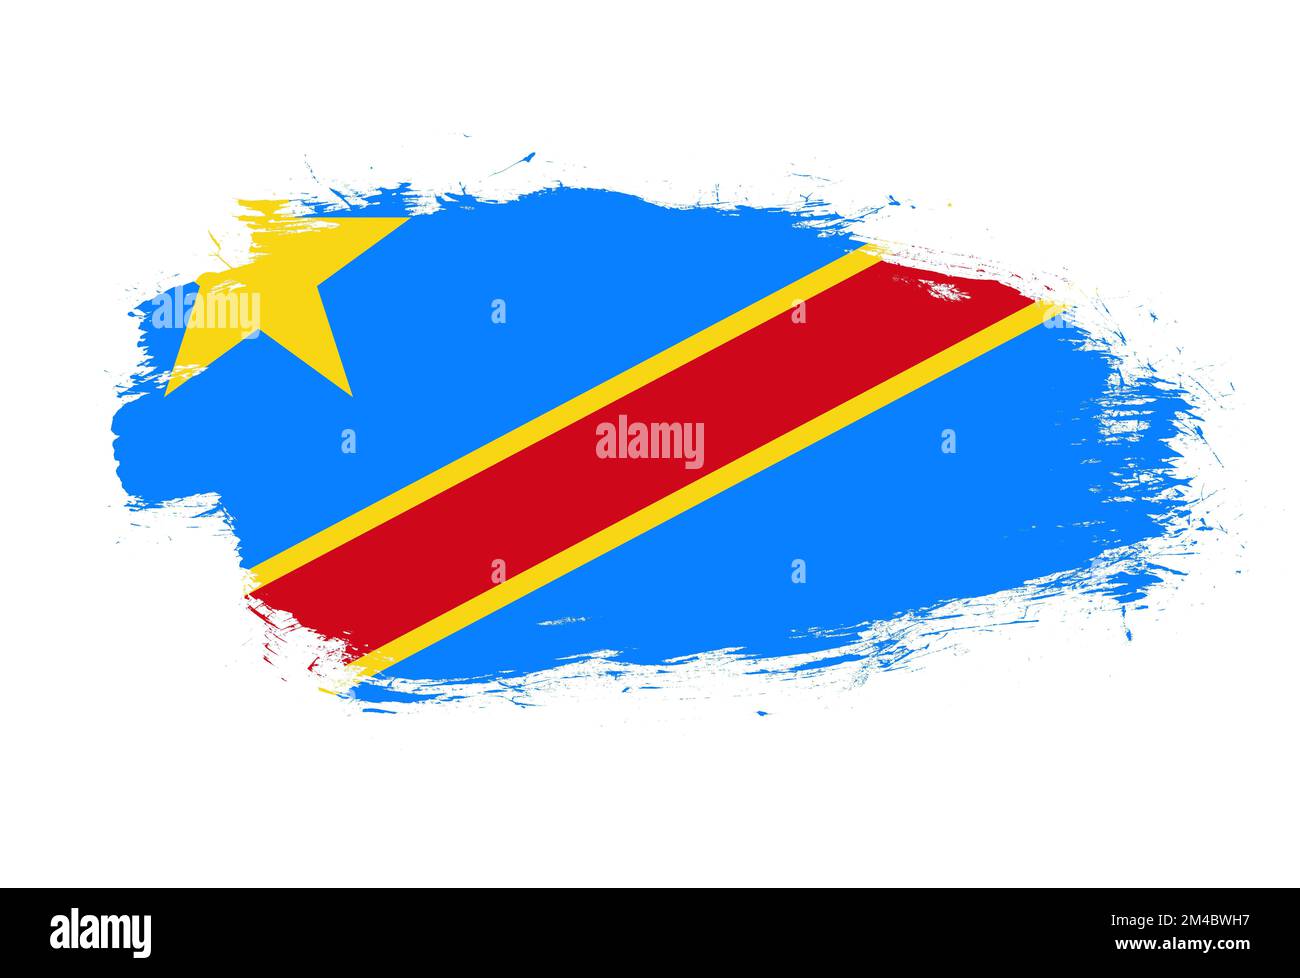 Flagge der demokratischen republik kongo auf weißem Pinselhintergrund Stockfoto